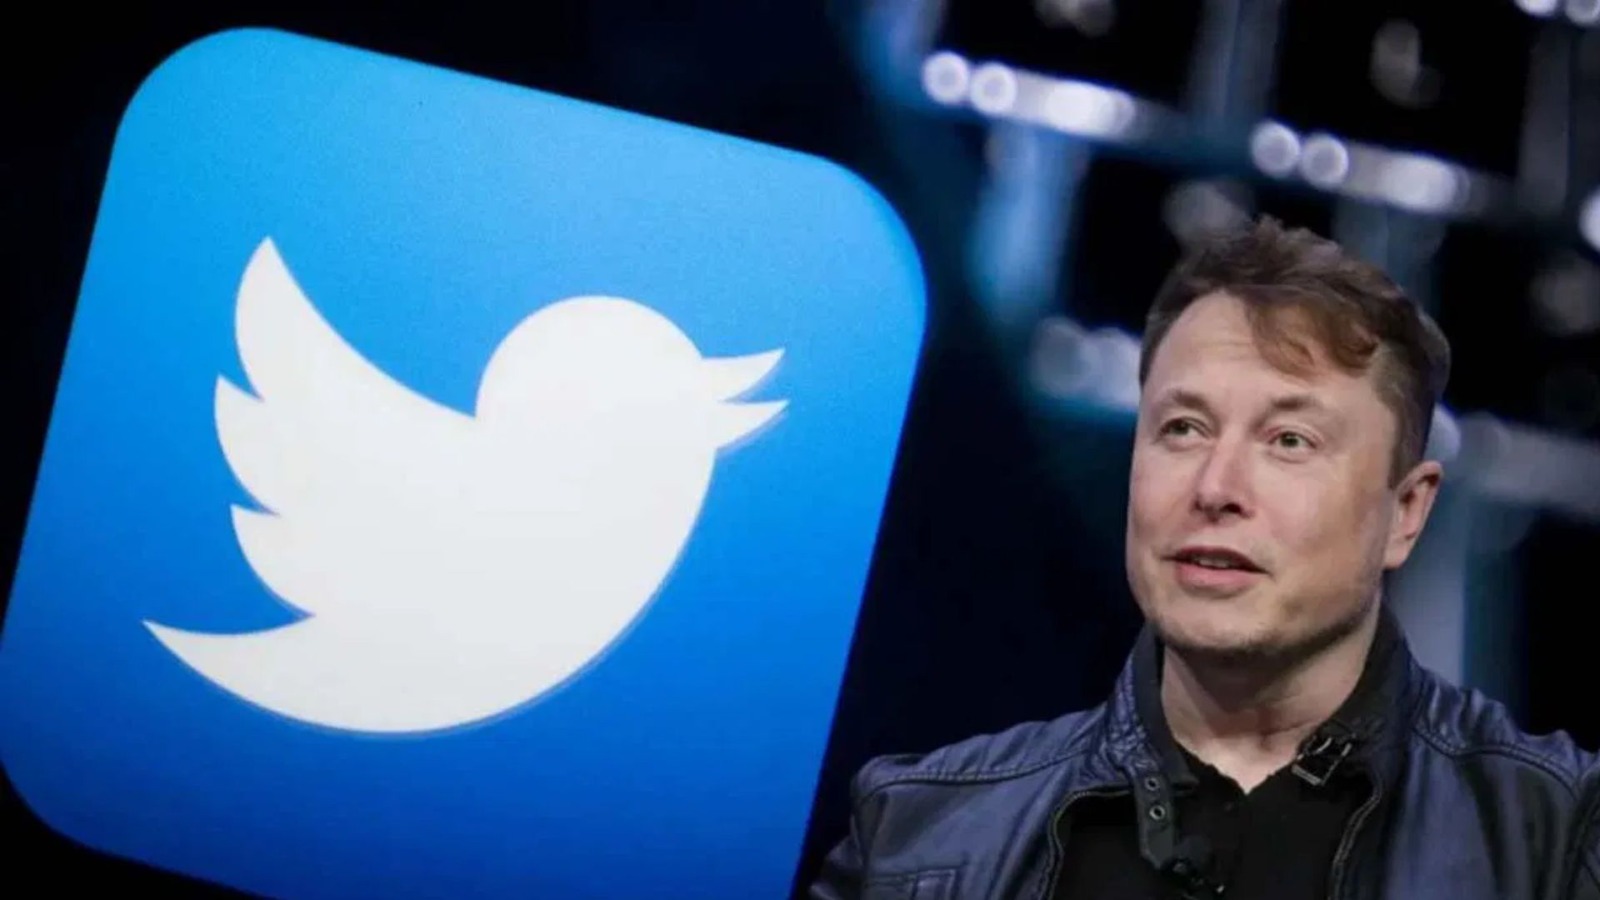 Mr. Tweet : Elon Musk ने Twitter पर बदला अपना नाम, जानिए New Name